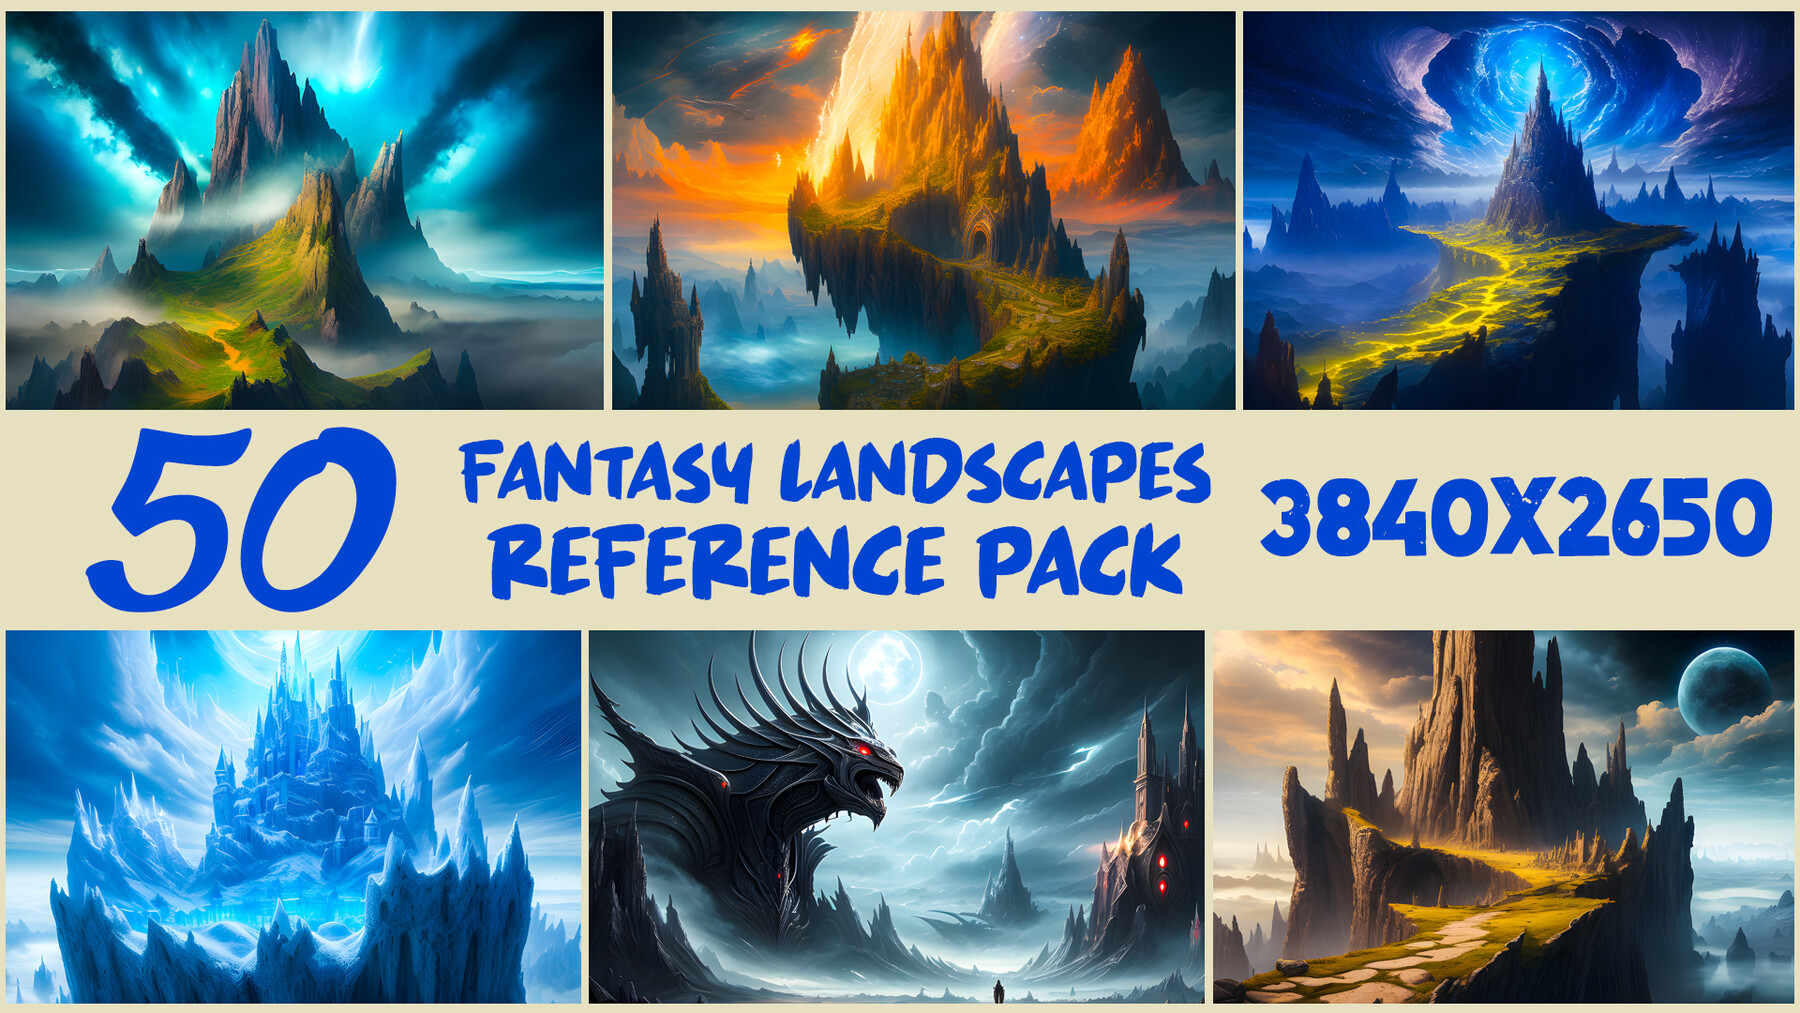 50 Fantasy Landscapes Environment Reference Pack Digital Artworks